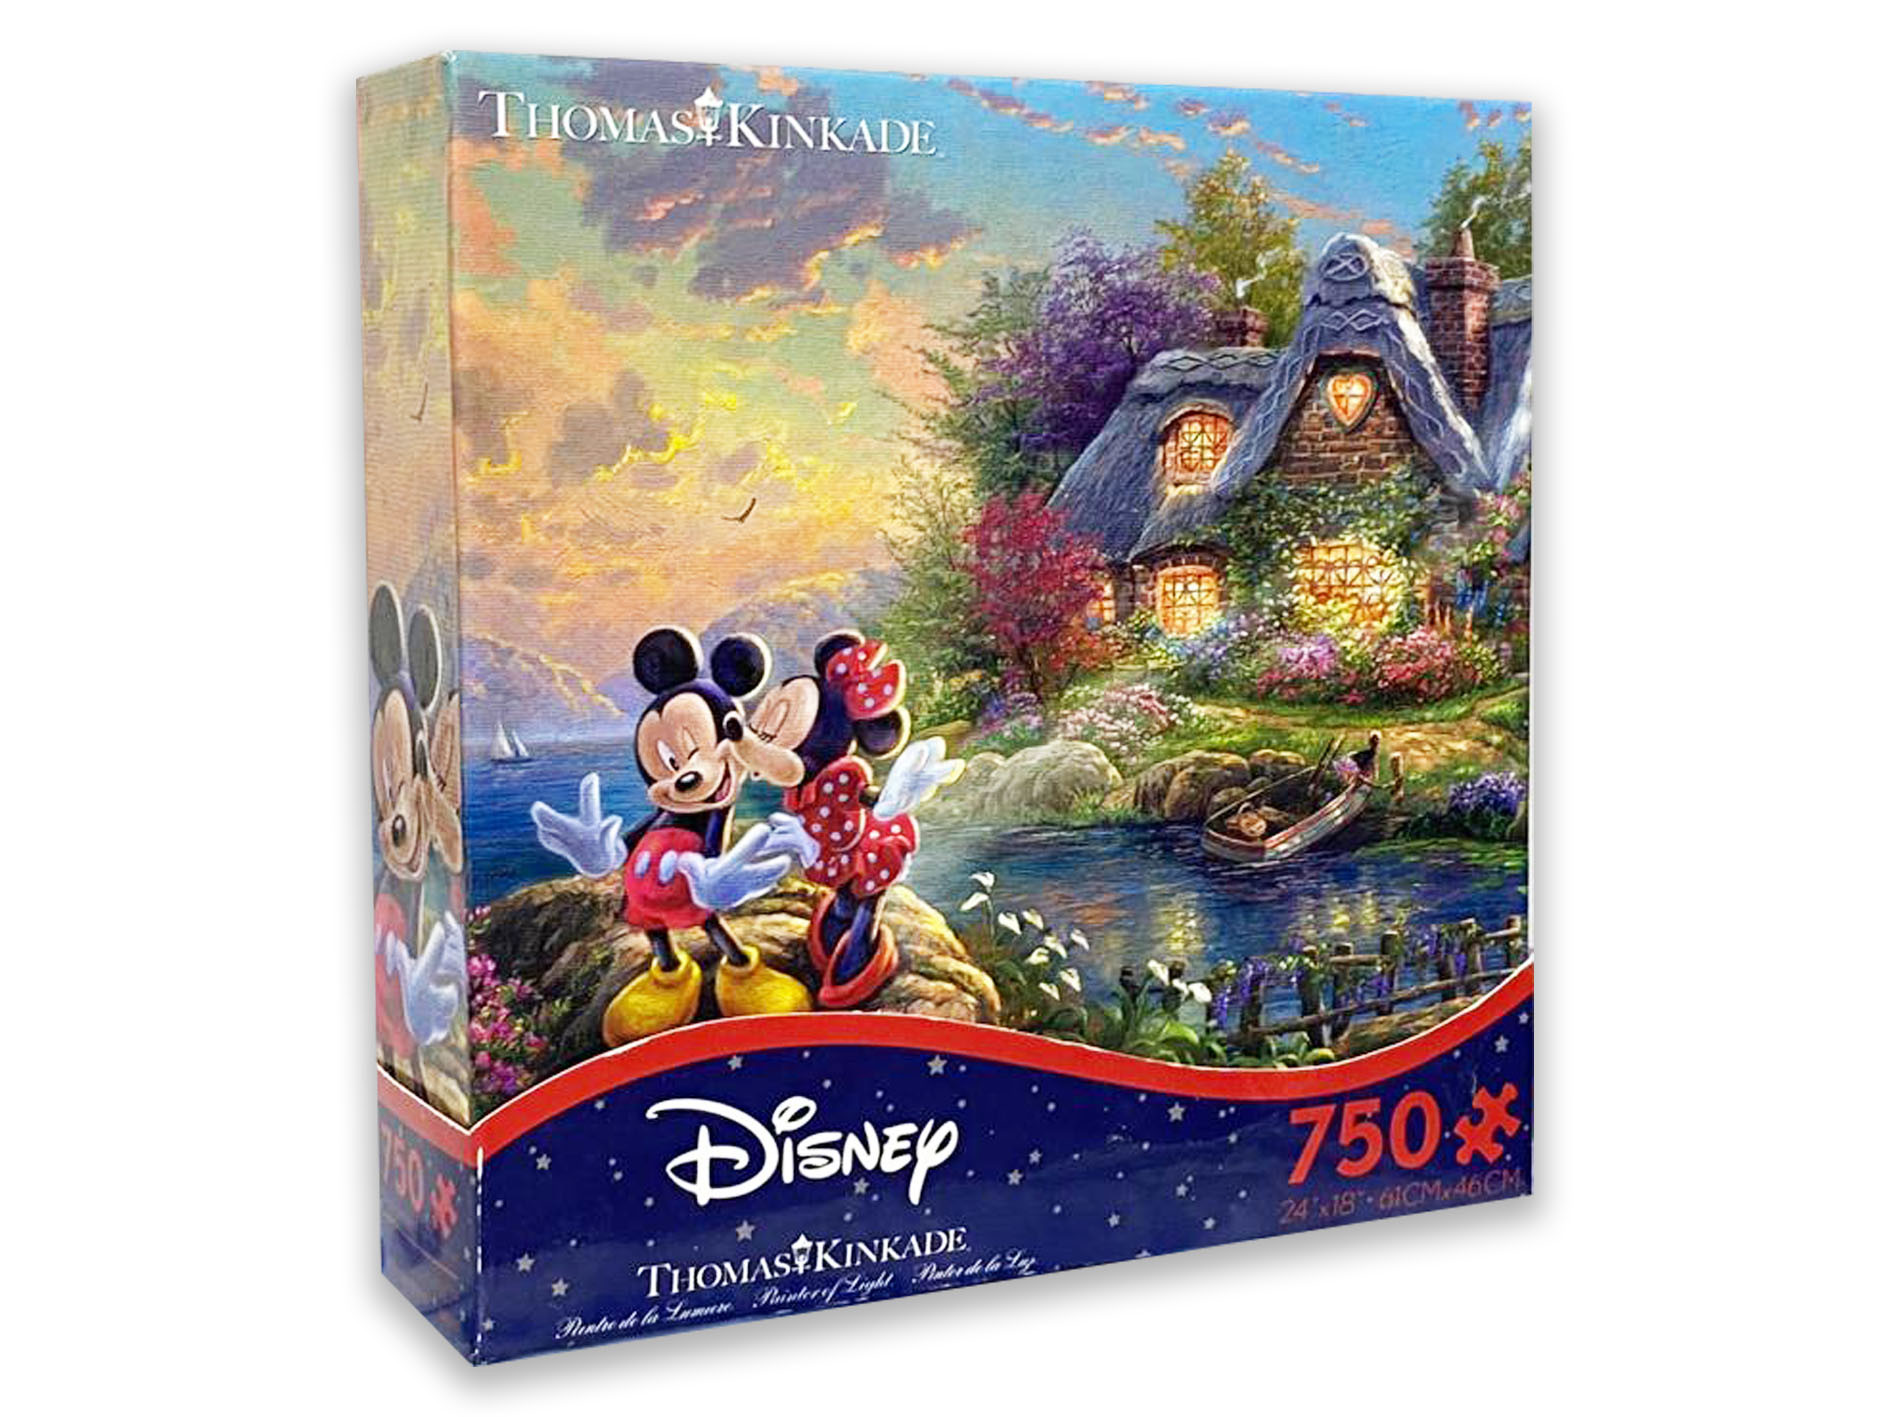 Disney Mickey and Minnie750 Piece Puzzle - Size 61cm*46cm